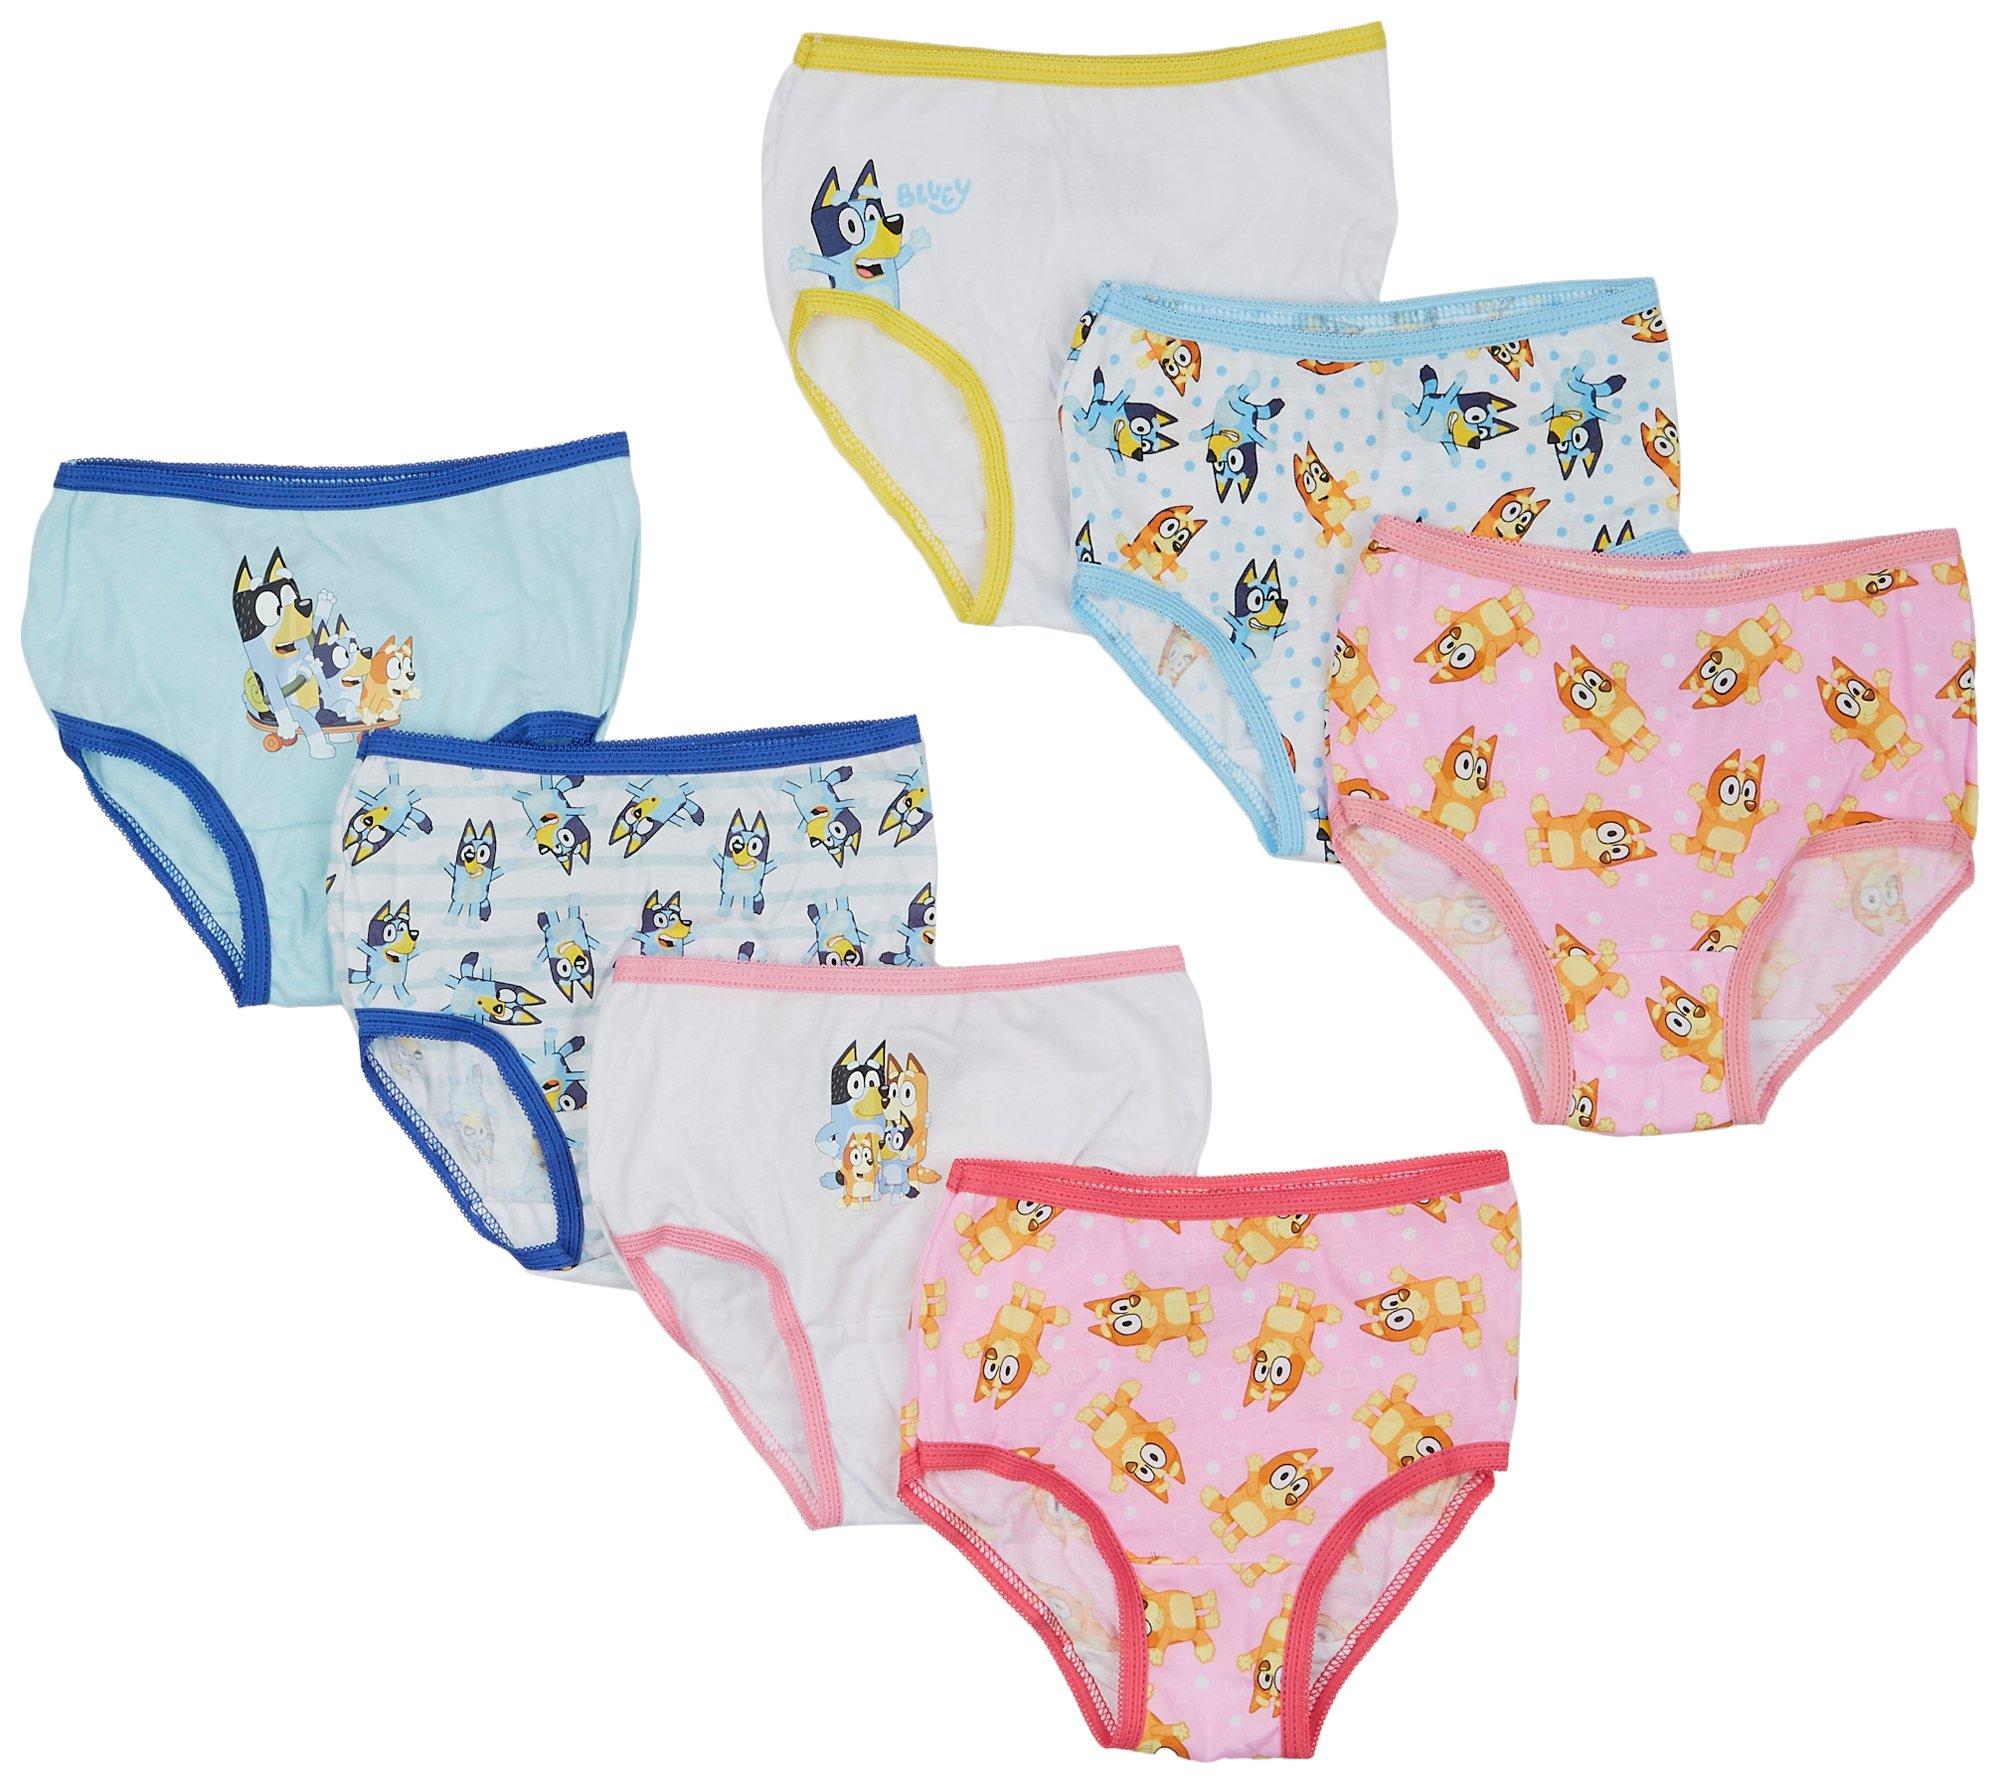 Disney Princess Hipster Underwear 7-Pack